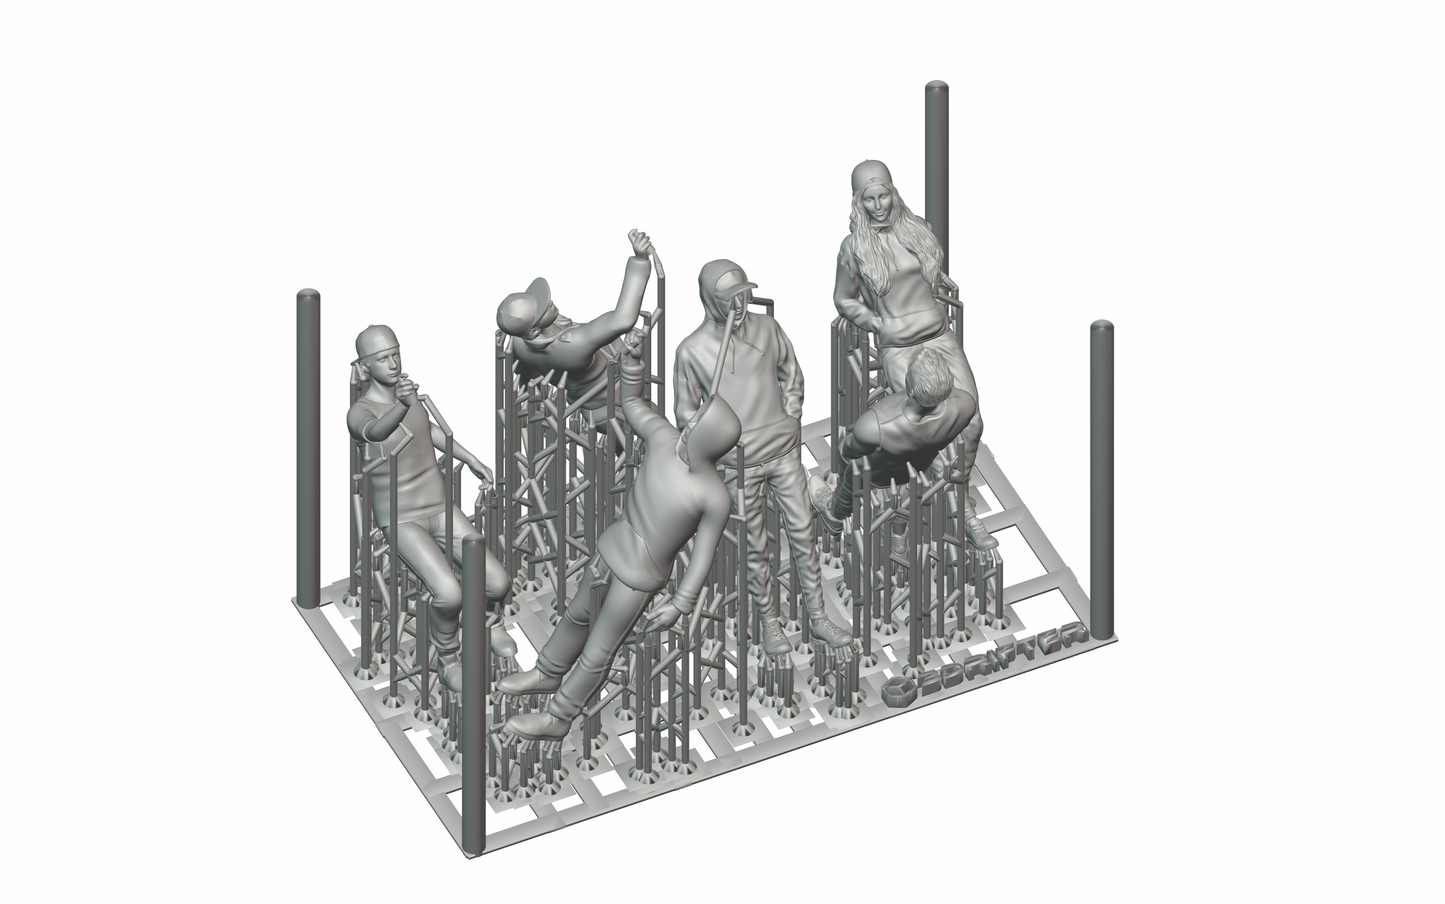 Produktfoto Diorama und Modellbau Miniatur Figur: Sprayer Gang Set, 6 Figuren